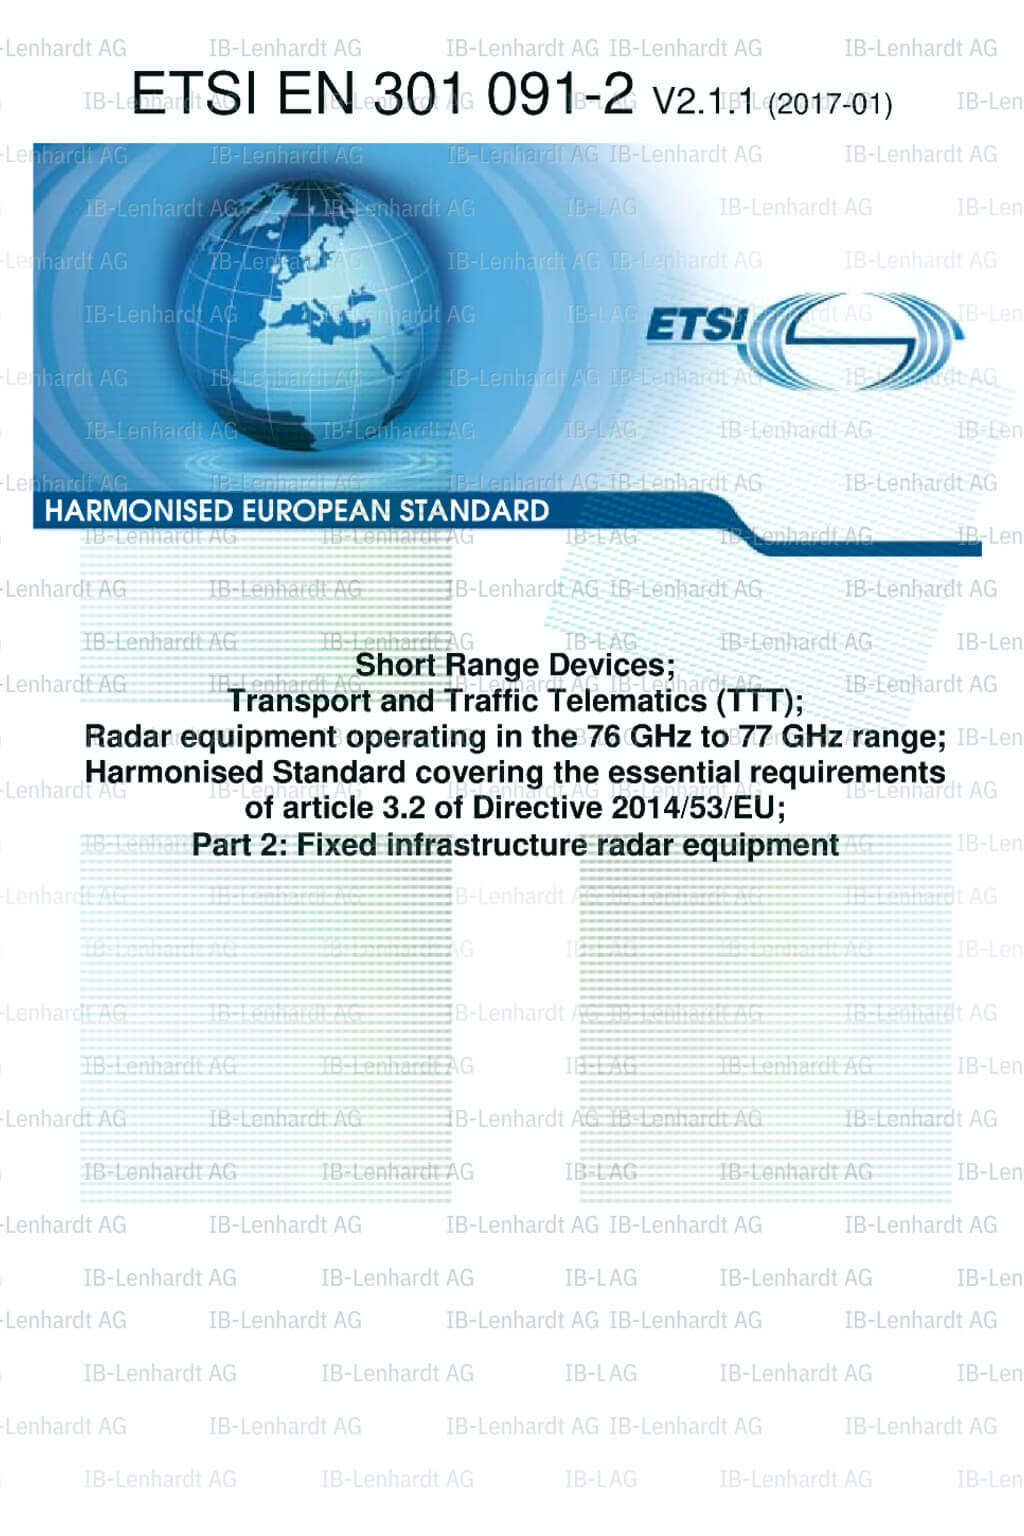 ETSI EN 301 091-2 V2.1.1